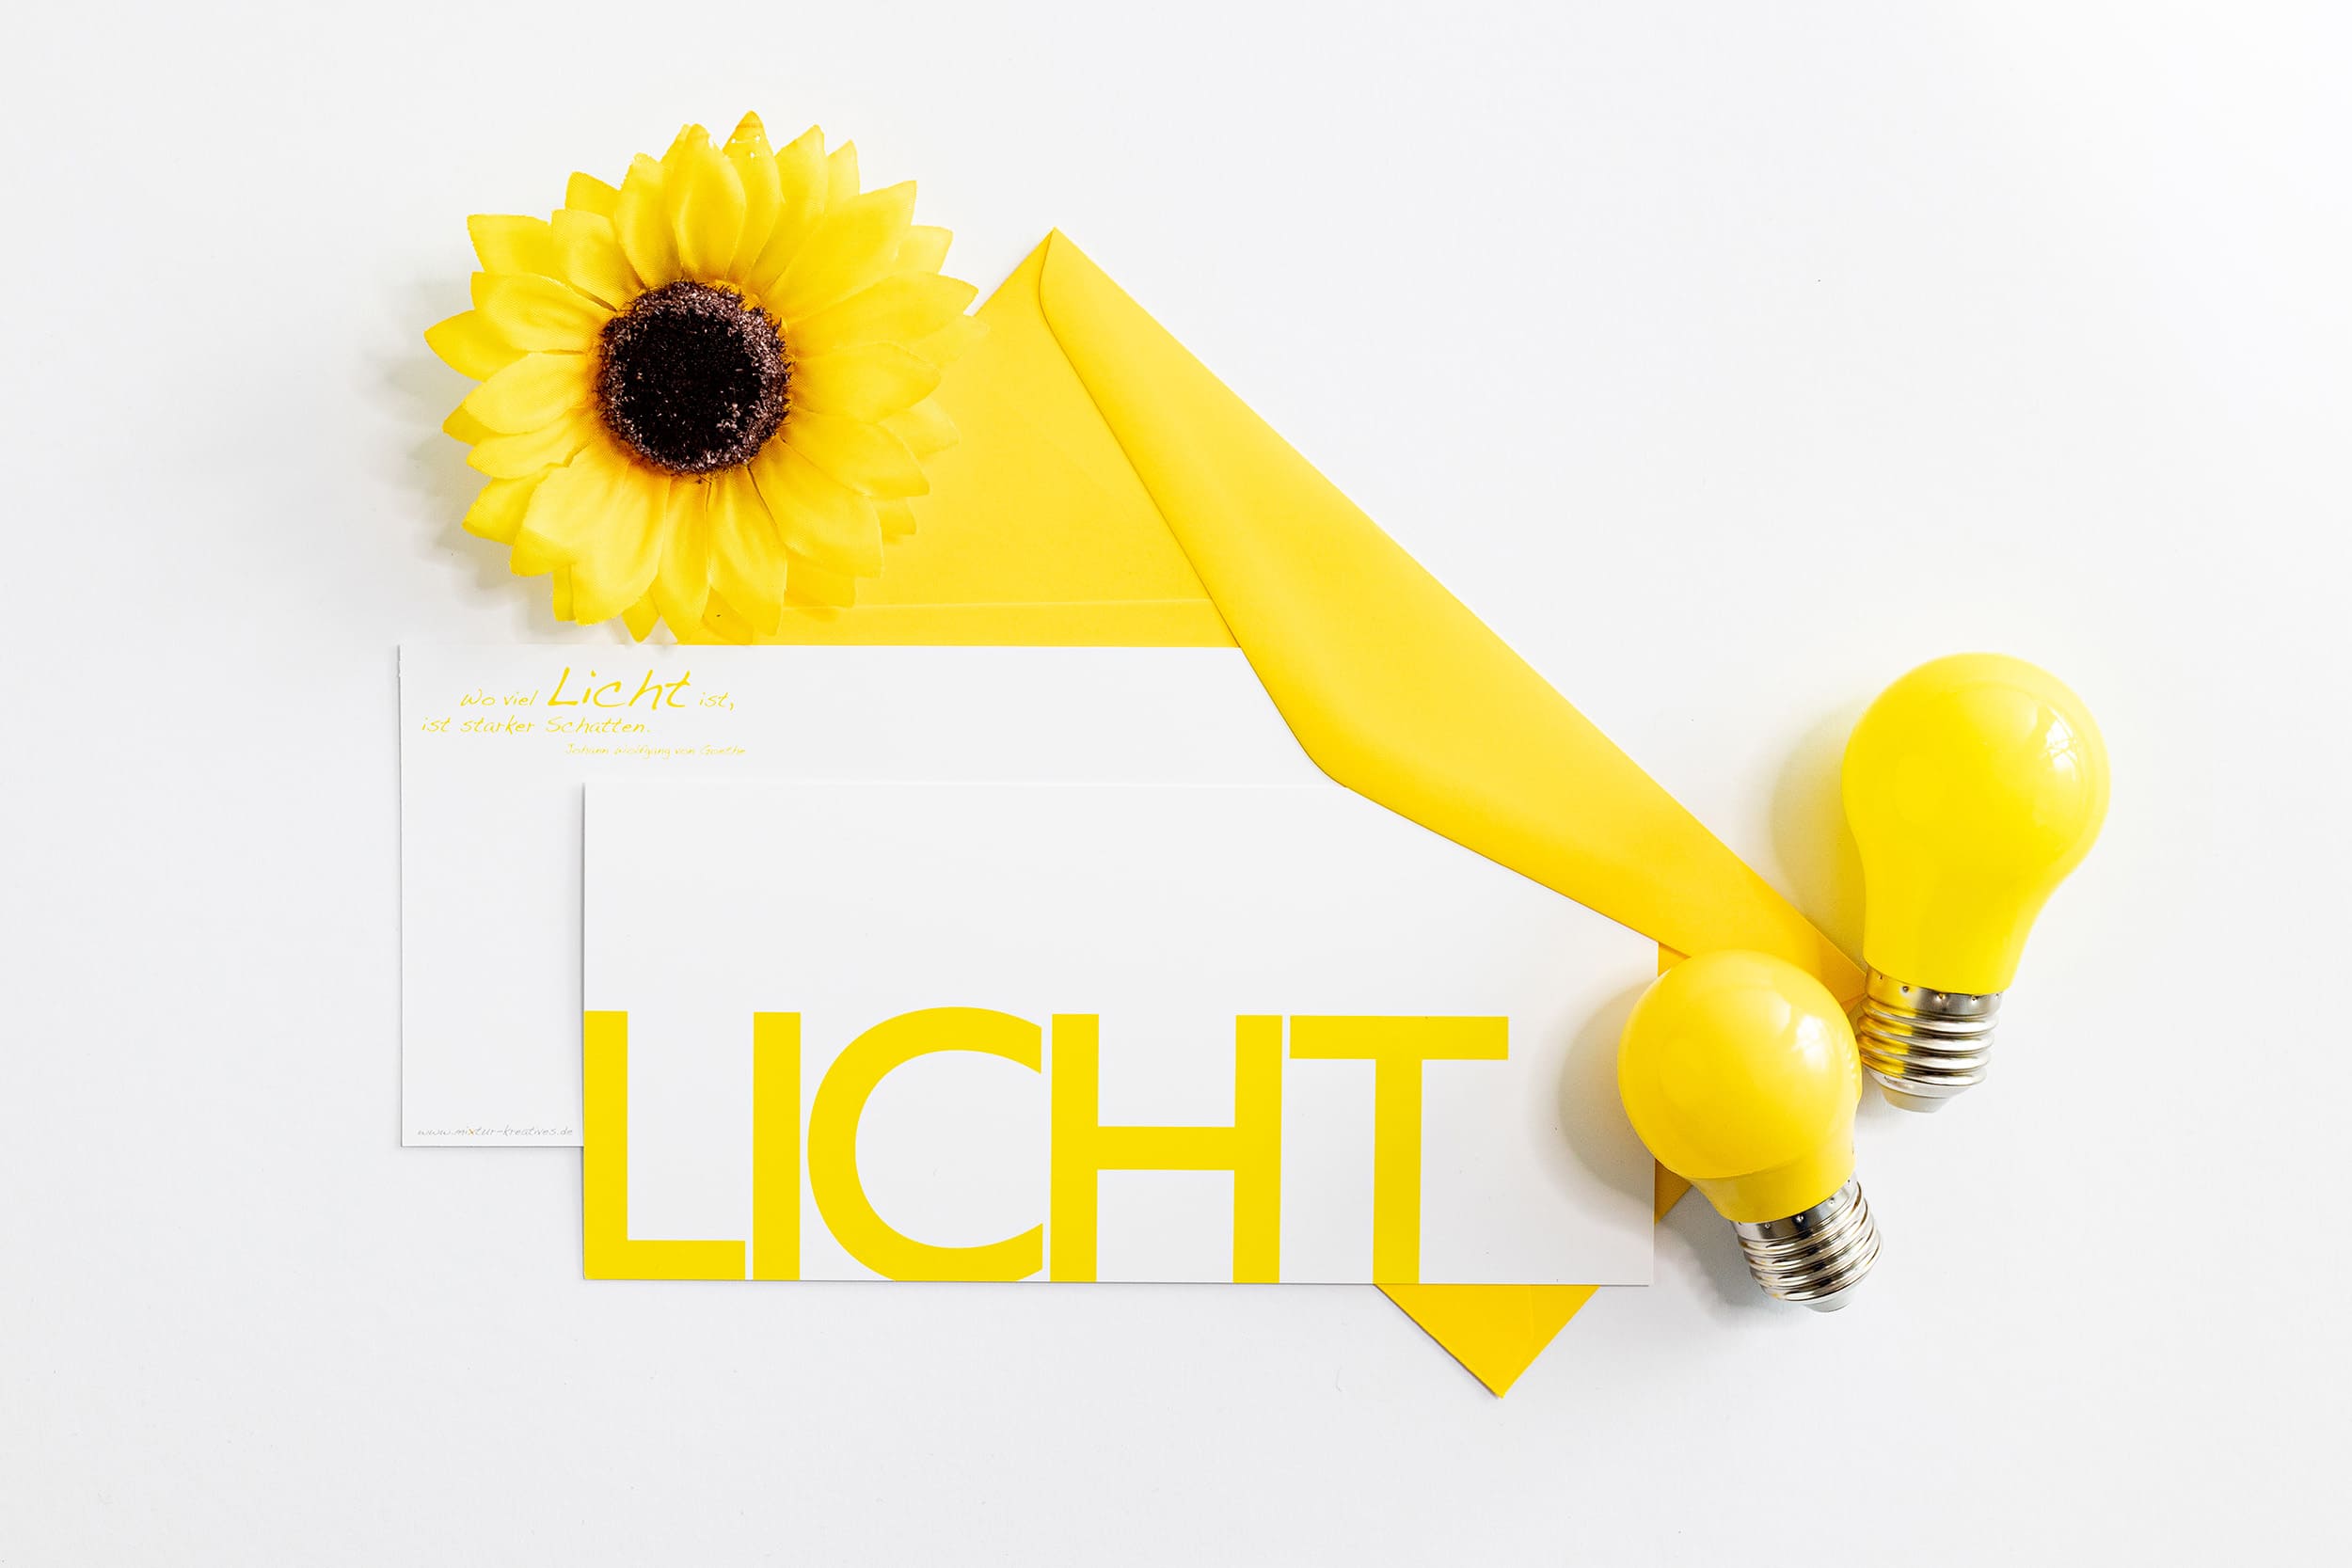 Grußkarte "LICHT" mit passenden Accessoires: Sonnenblume und gelben Glühbirnen